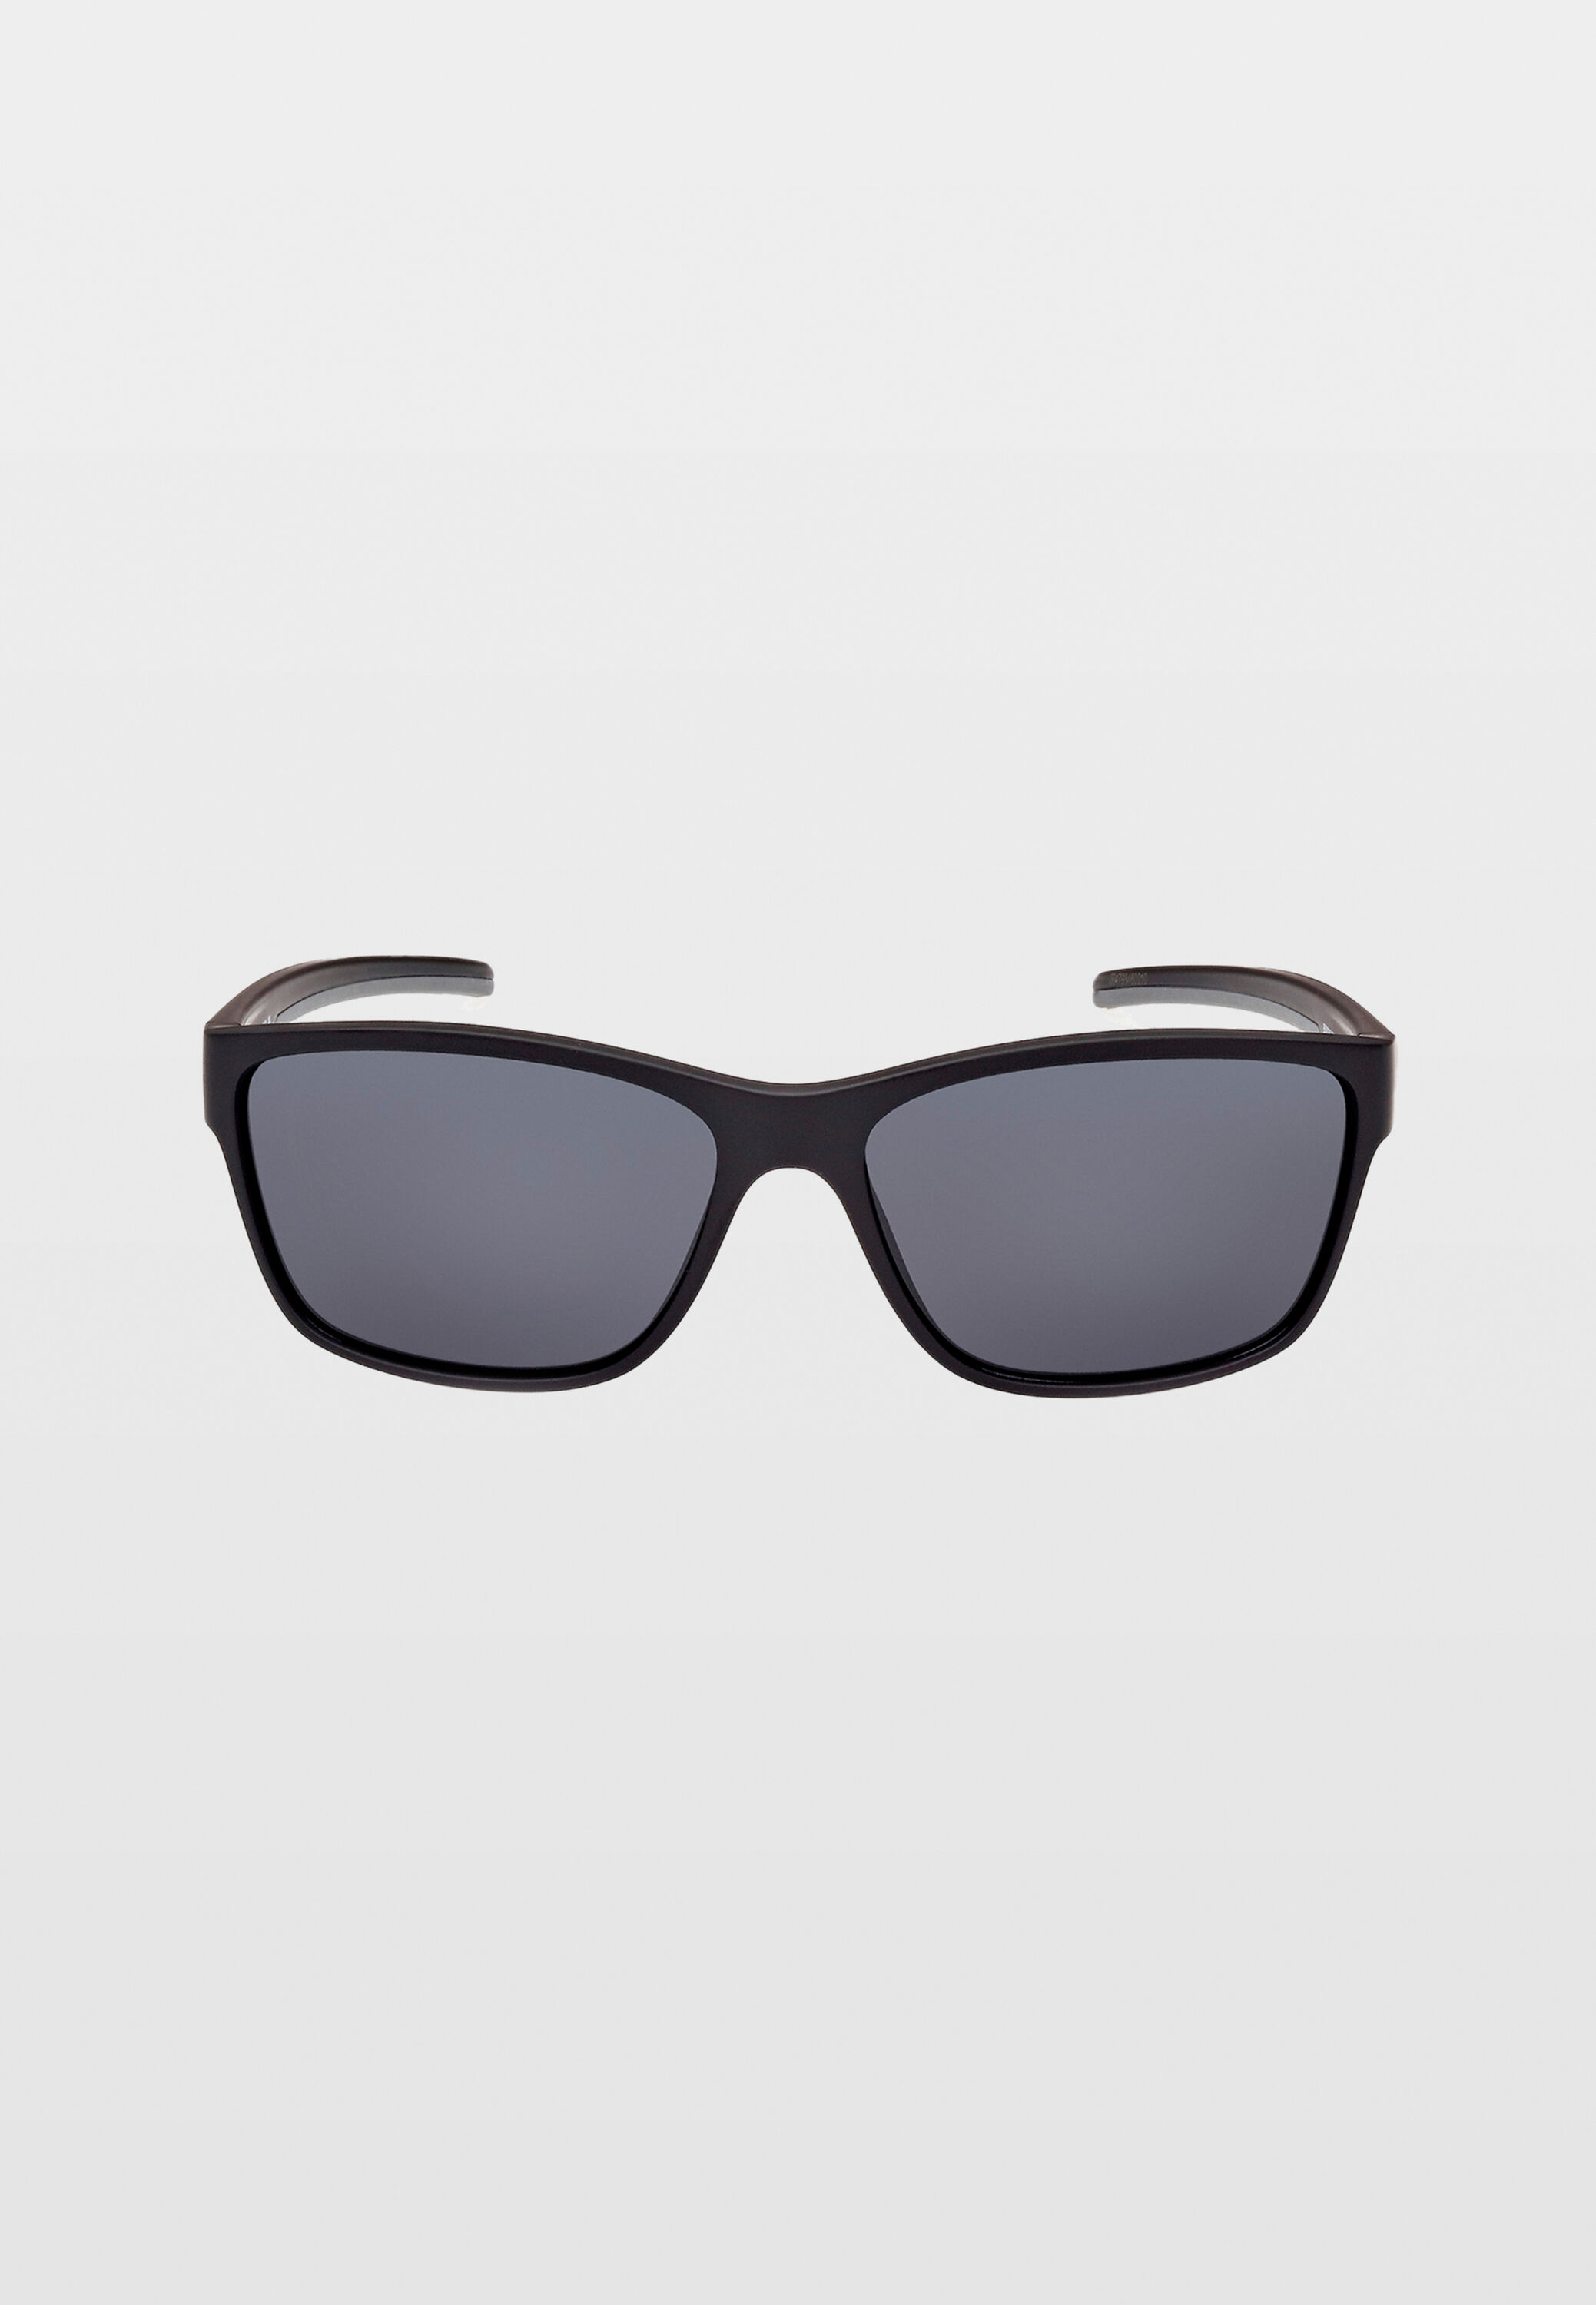 Sur-lunettes de soleil pour conducteurs avec lunettes sur